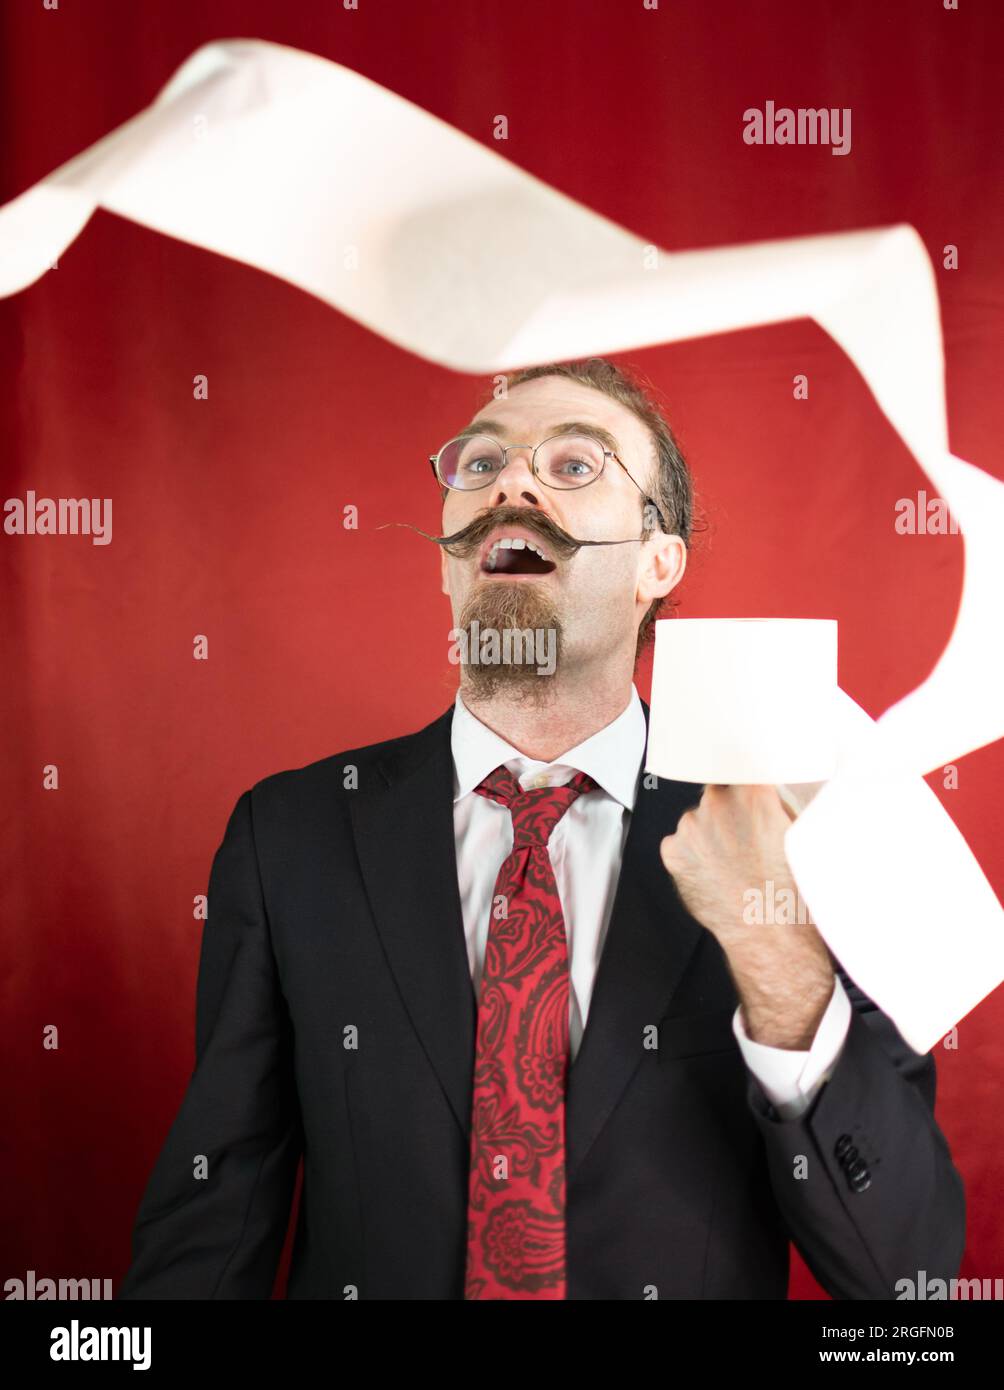 Homme choqué avec des lunettes, cravate rouge et papier toilette à la main regardant comment il vole Banque D'Images